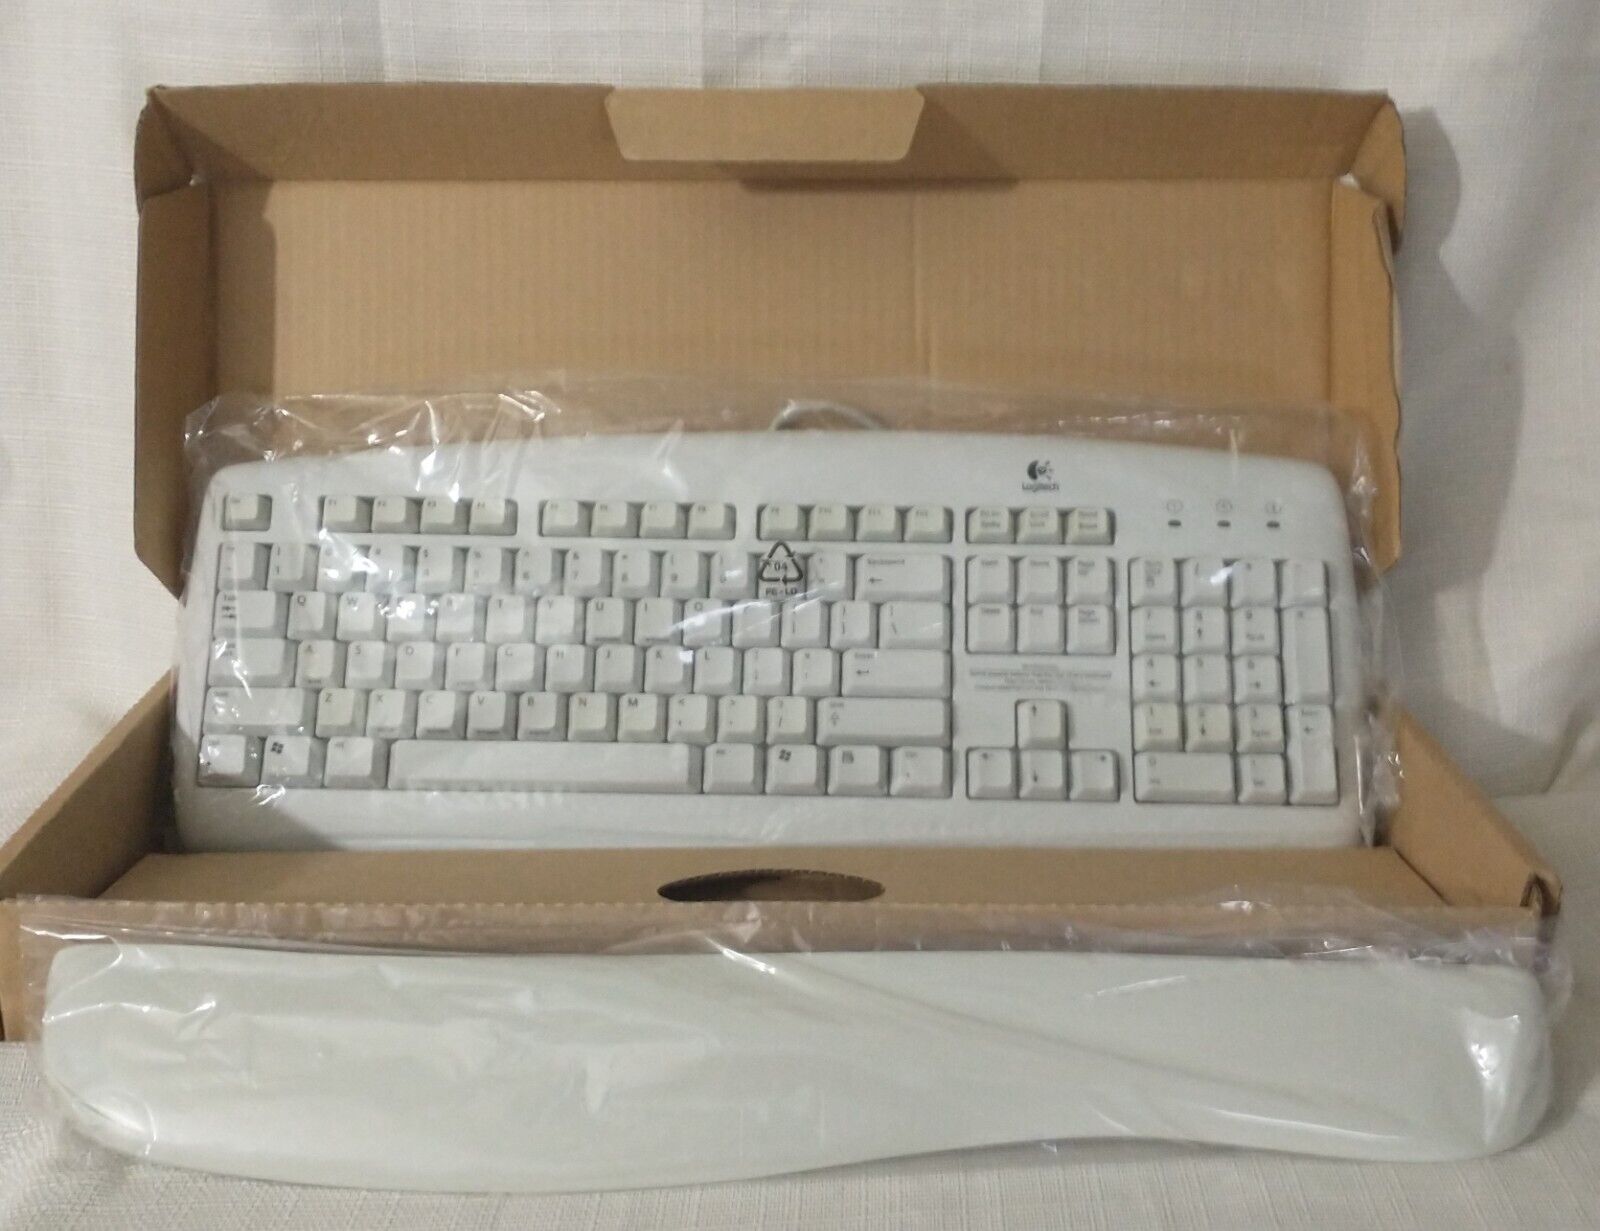 Logitech Deluxe Keyboard 967396-0403. White ***NEW 2002***